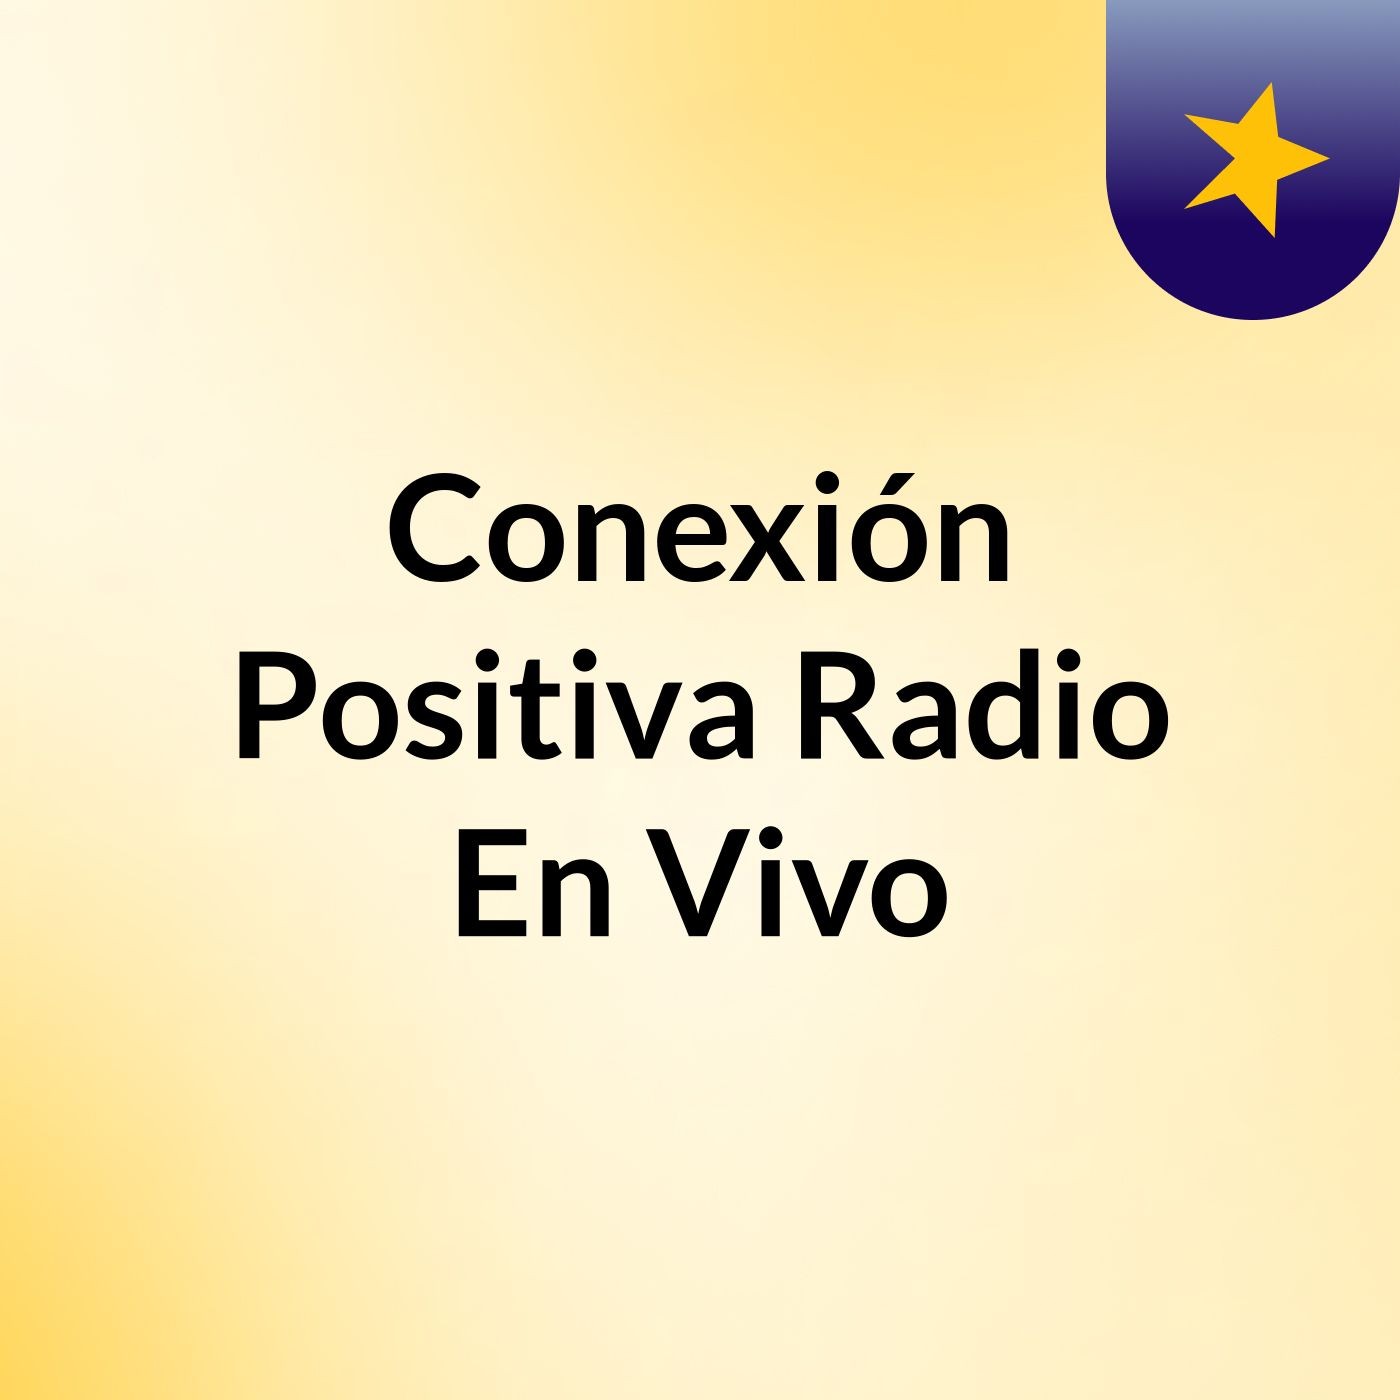 Episodio 4 - Conexión Positiva Radio En Vivo